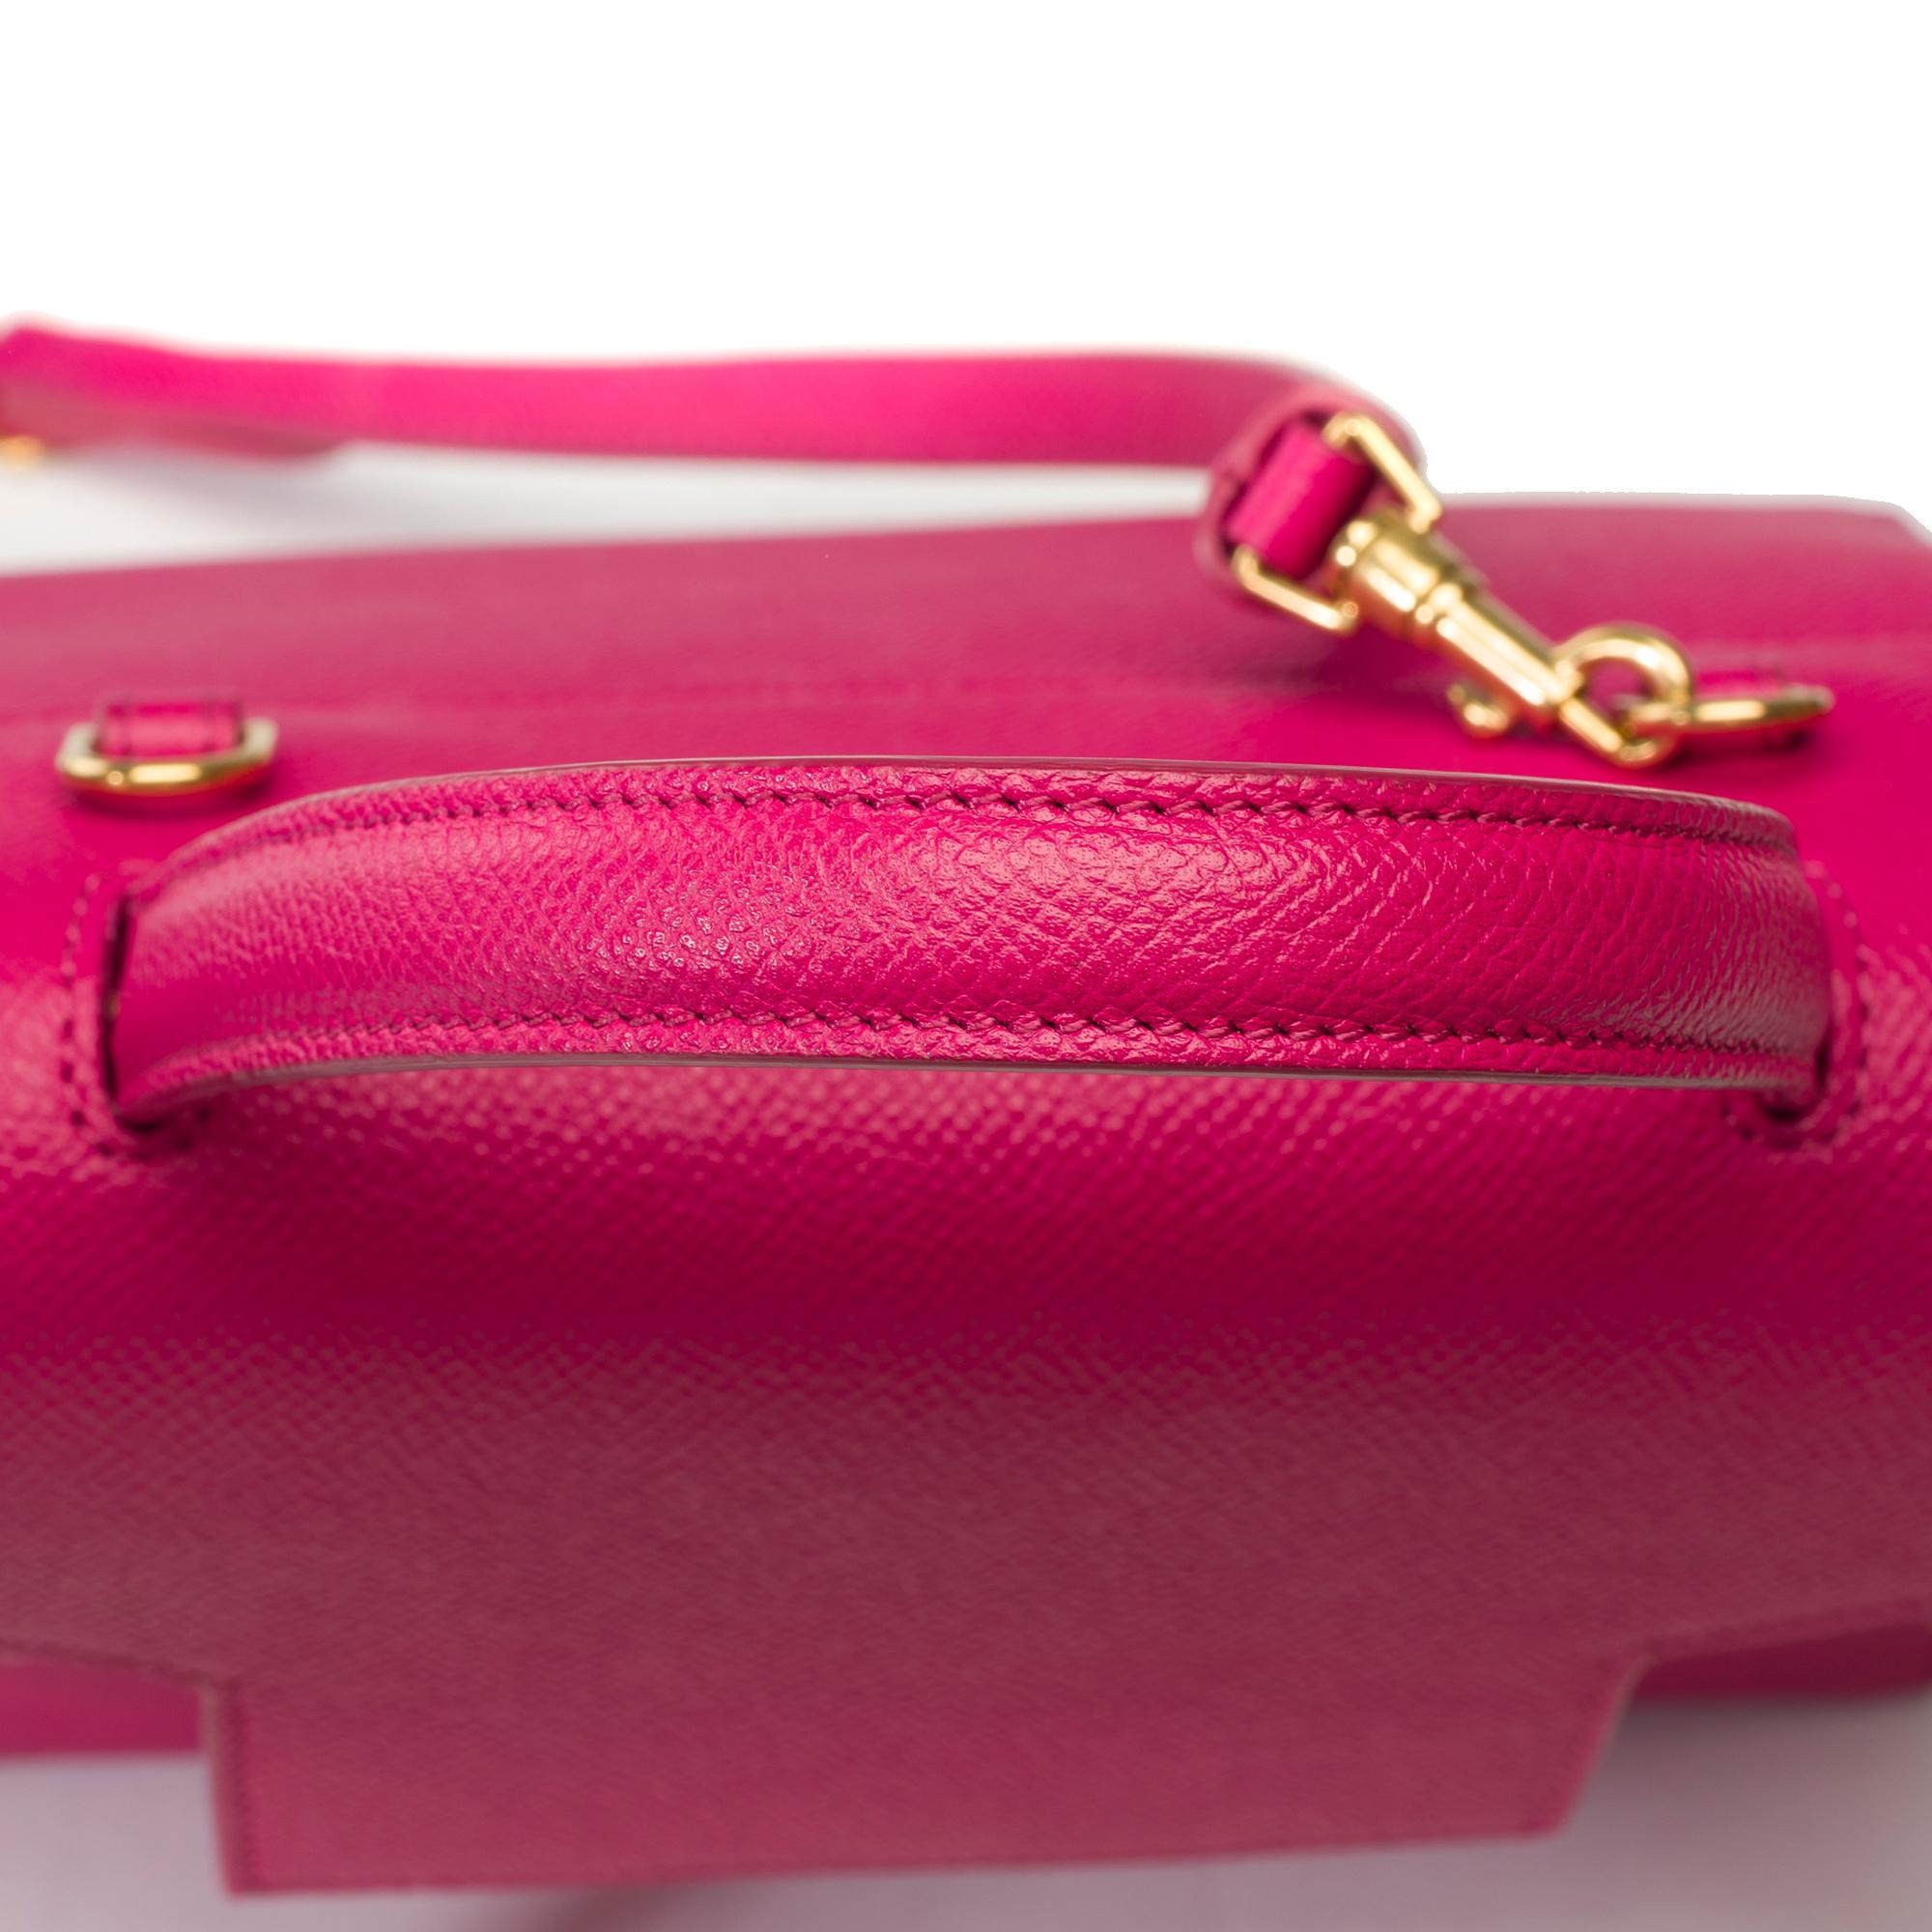 Celine Belt Nano handbag strap in pink calf leather, GHW For Sale 6